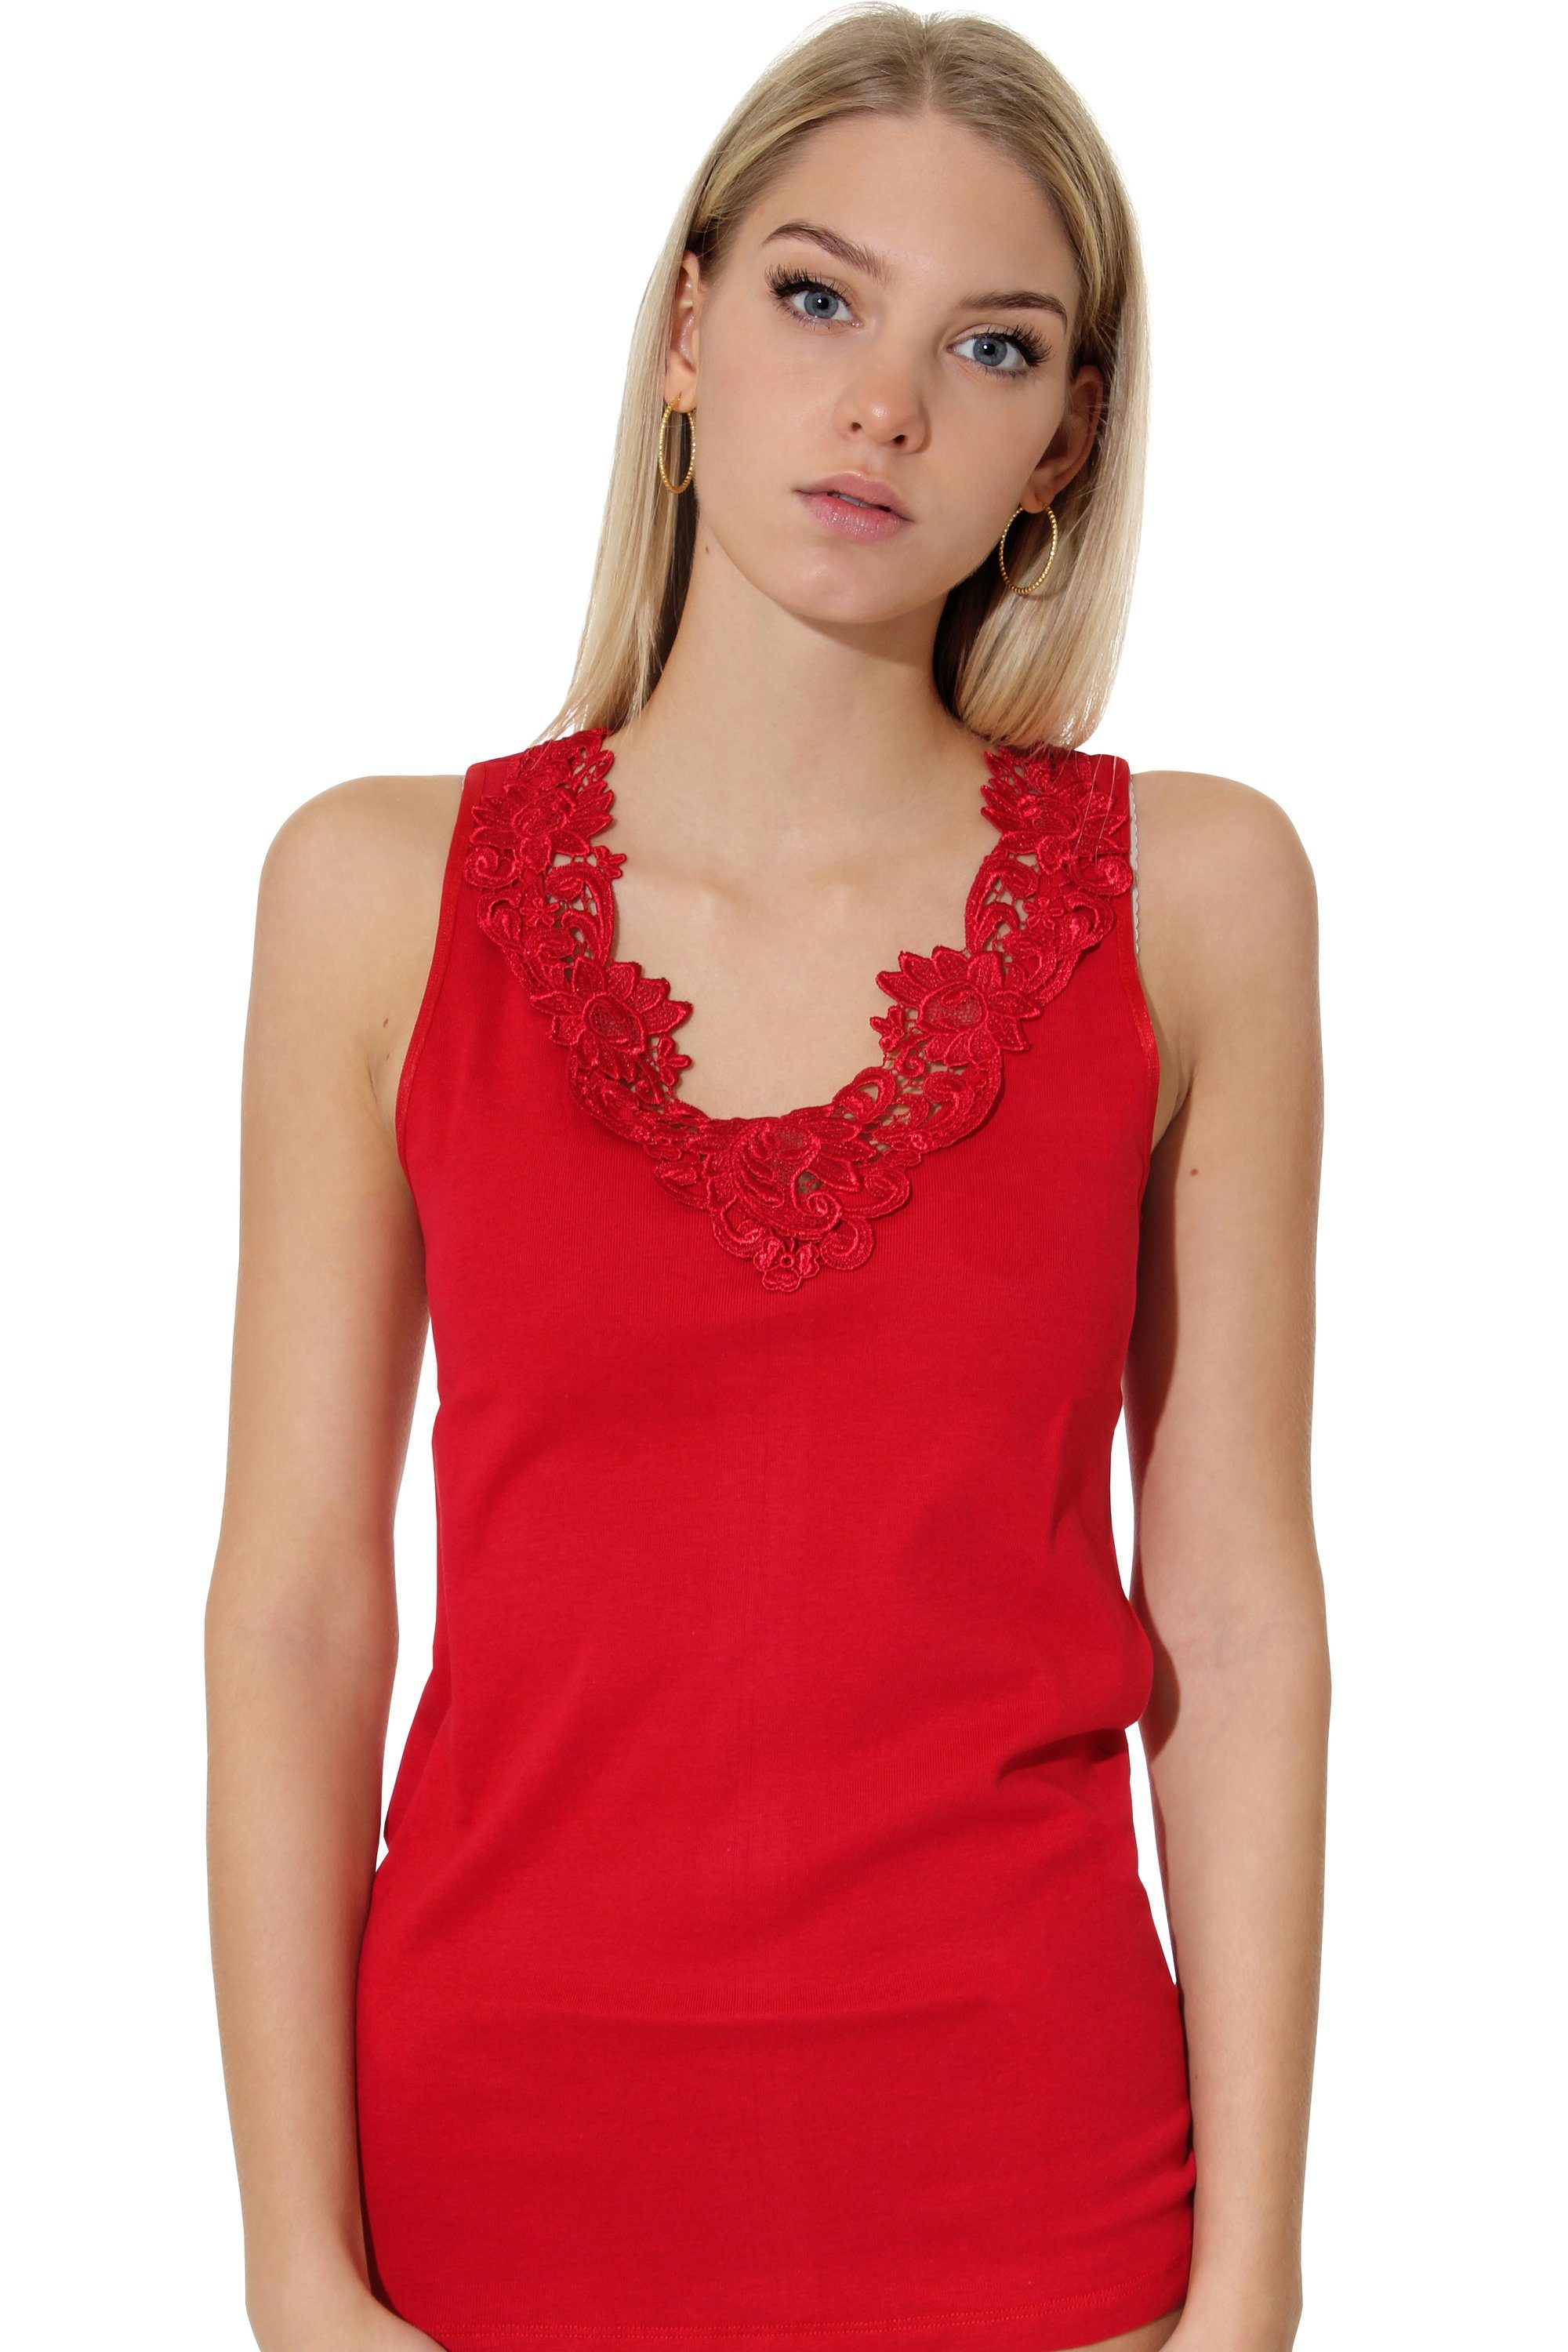 Cotton Prime® Unterhemd mit Baumwollqualität Spitze rot in angenehmer